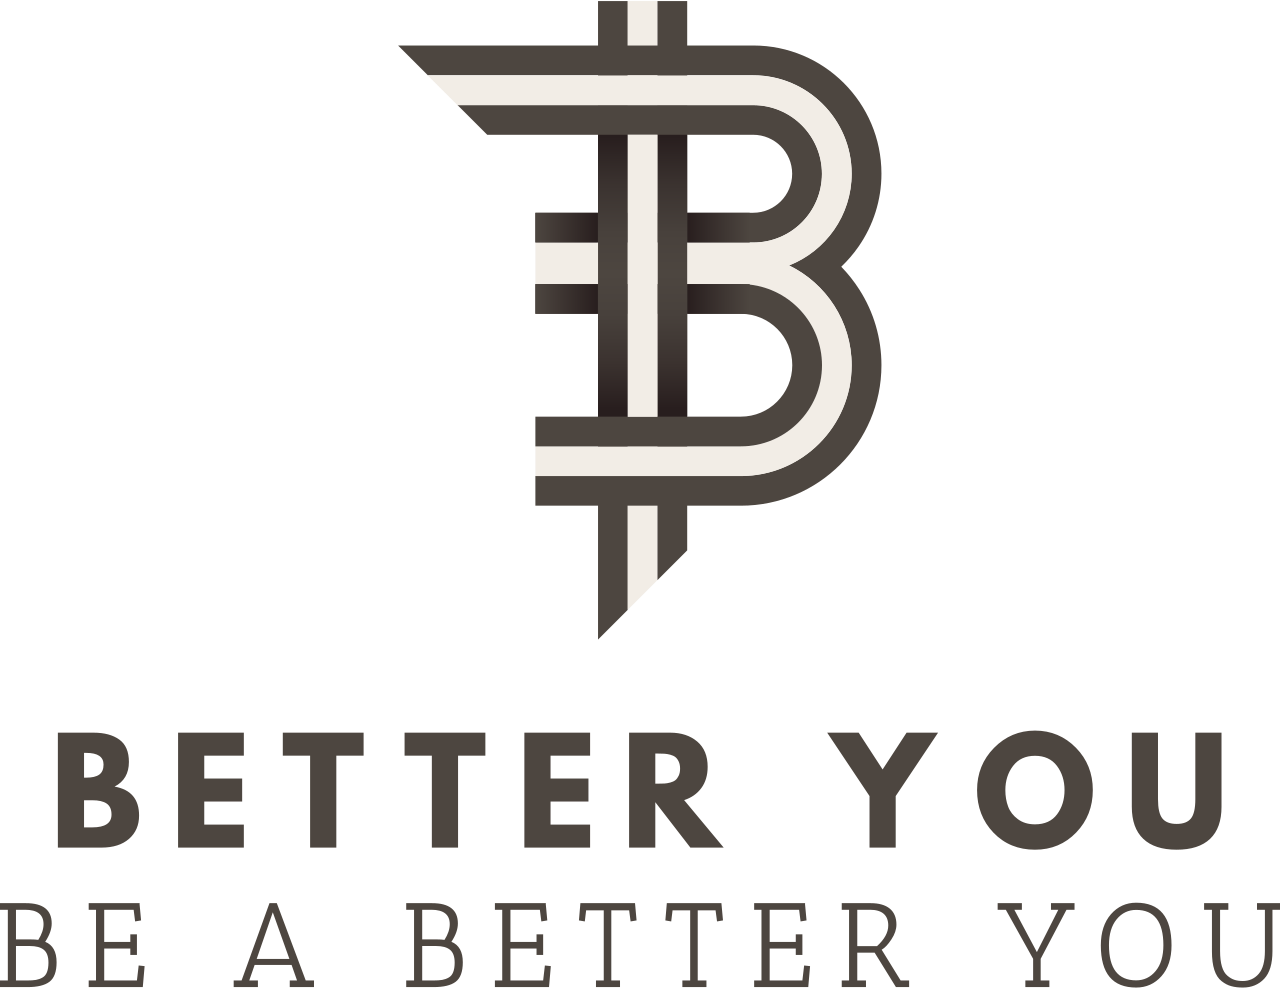 Better you's logo